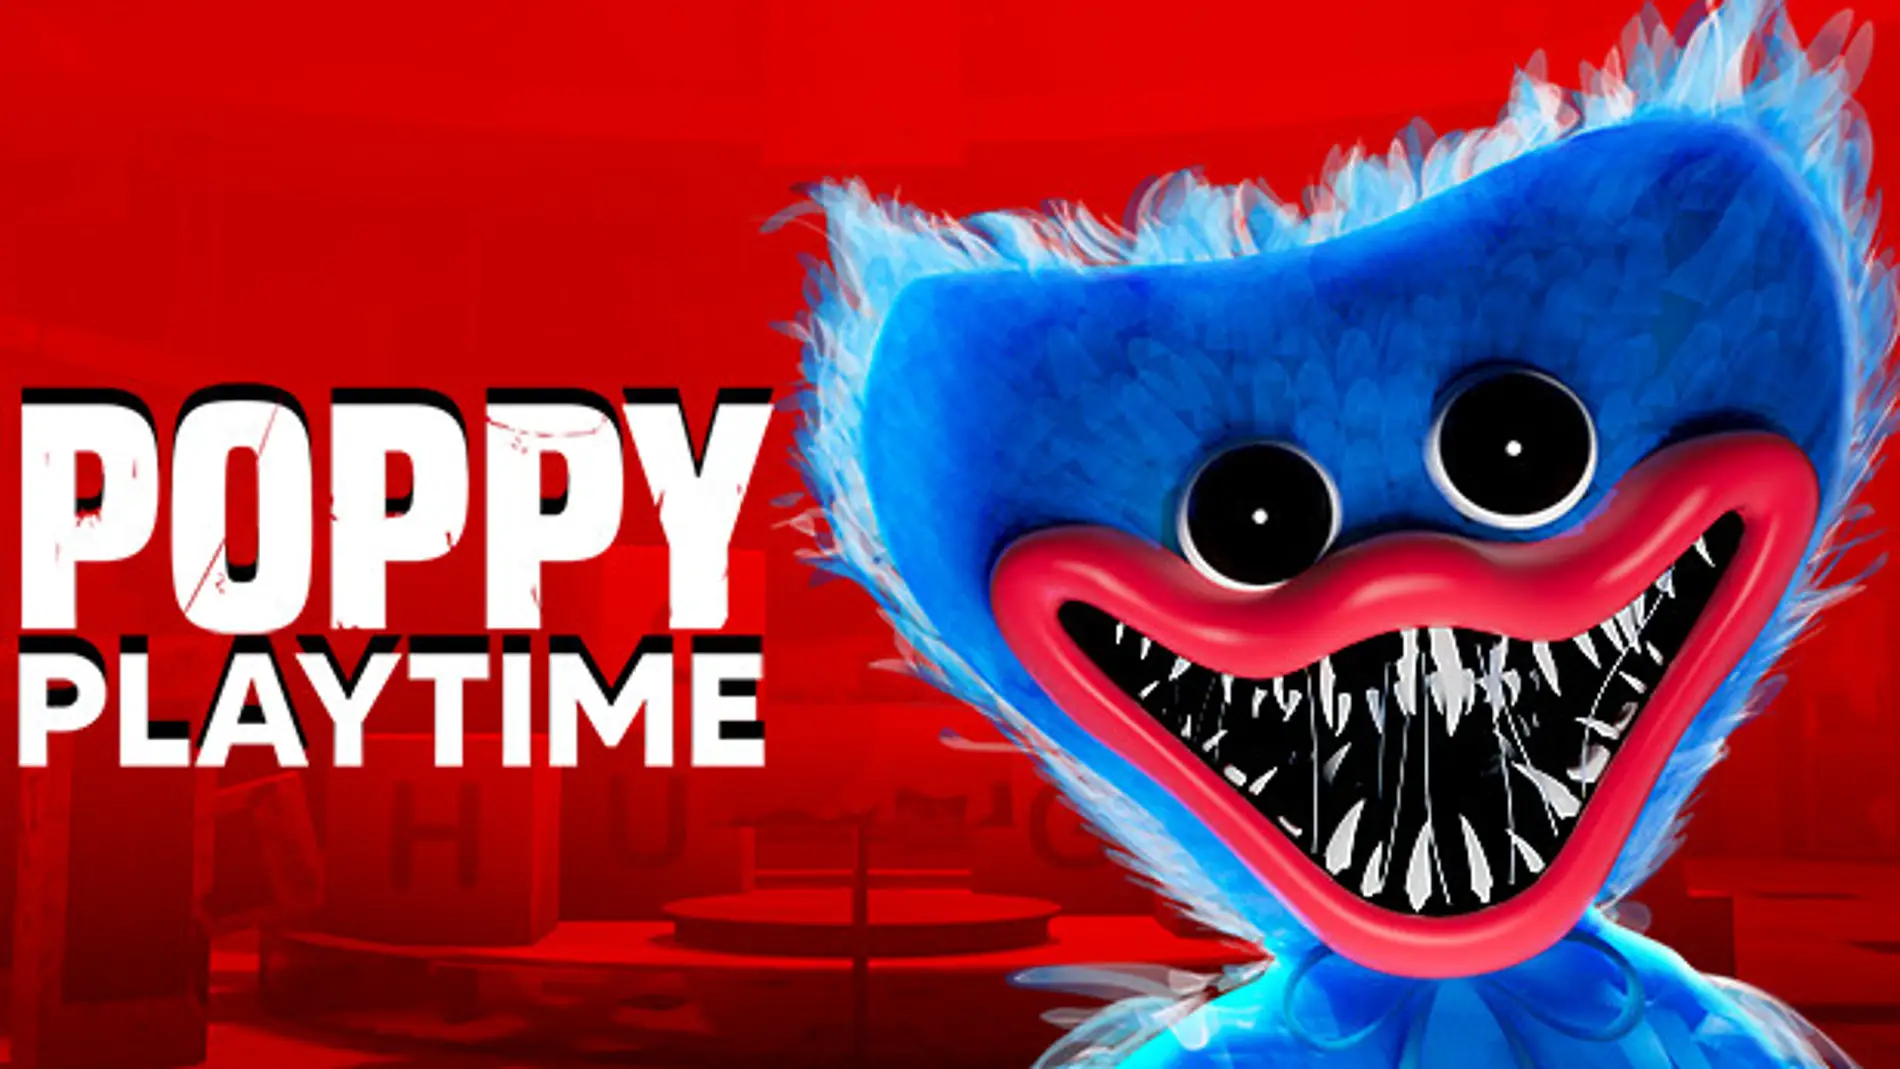 Poppy Playtime, el juego de terror en una fábrica de juguetes que será tu  nueva pesadilla - Vandal